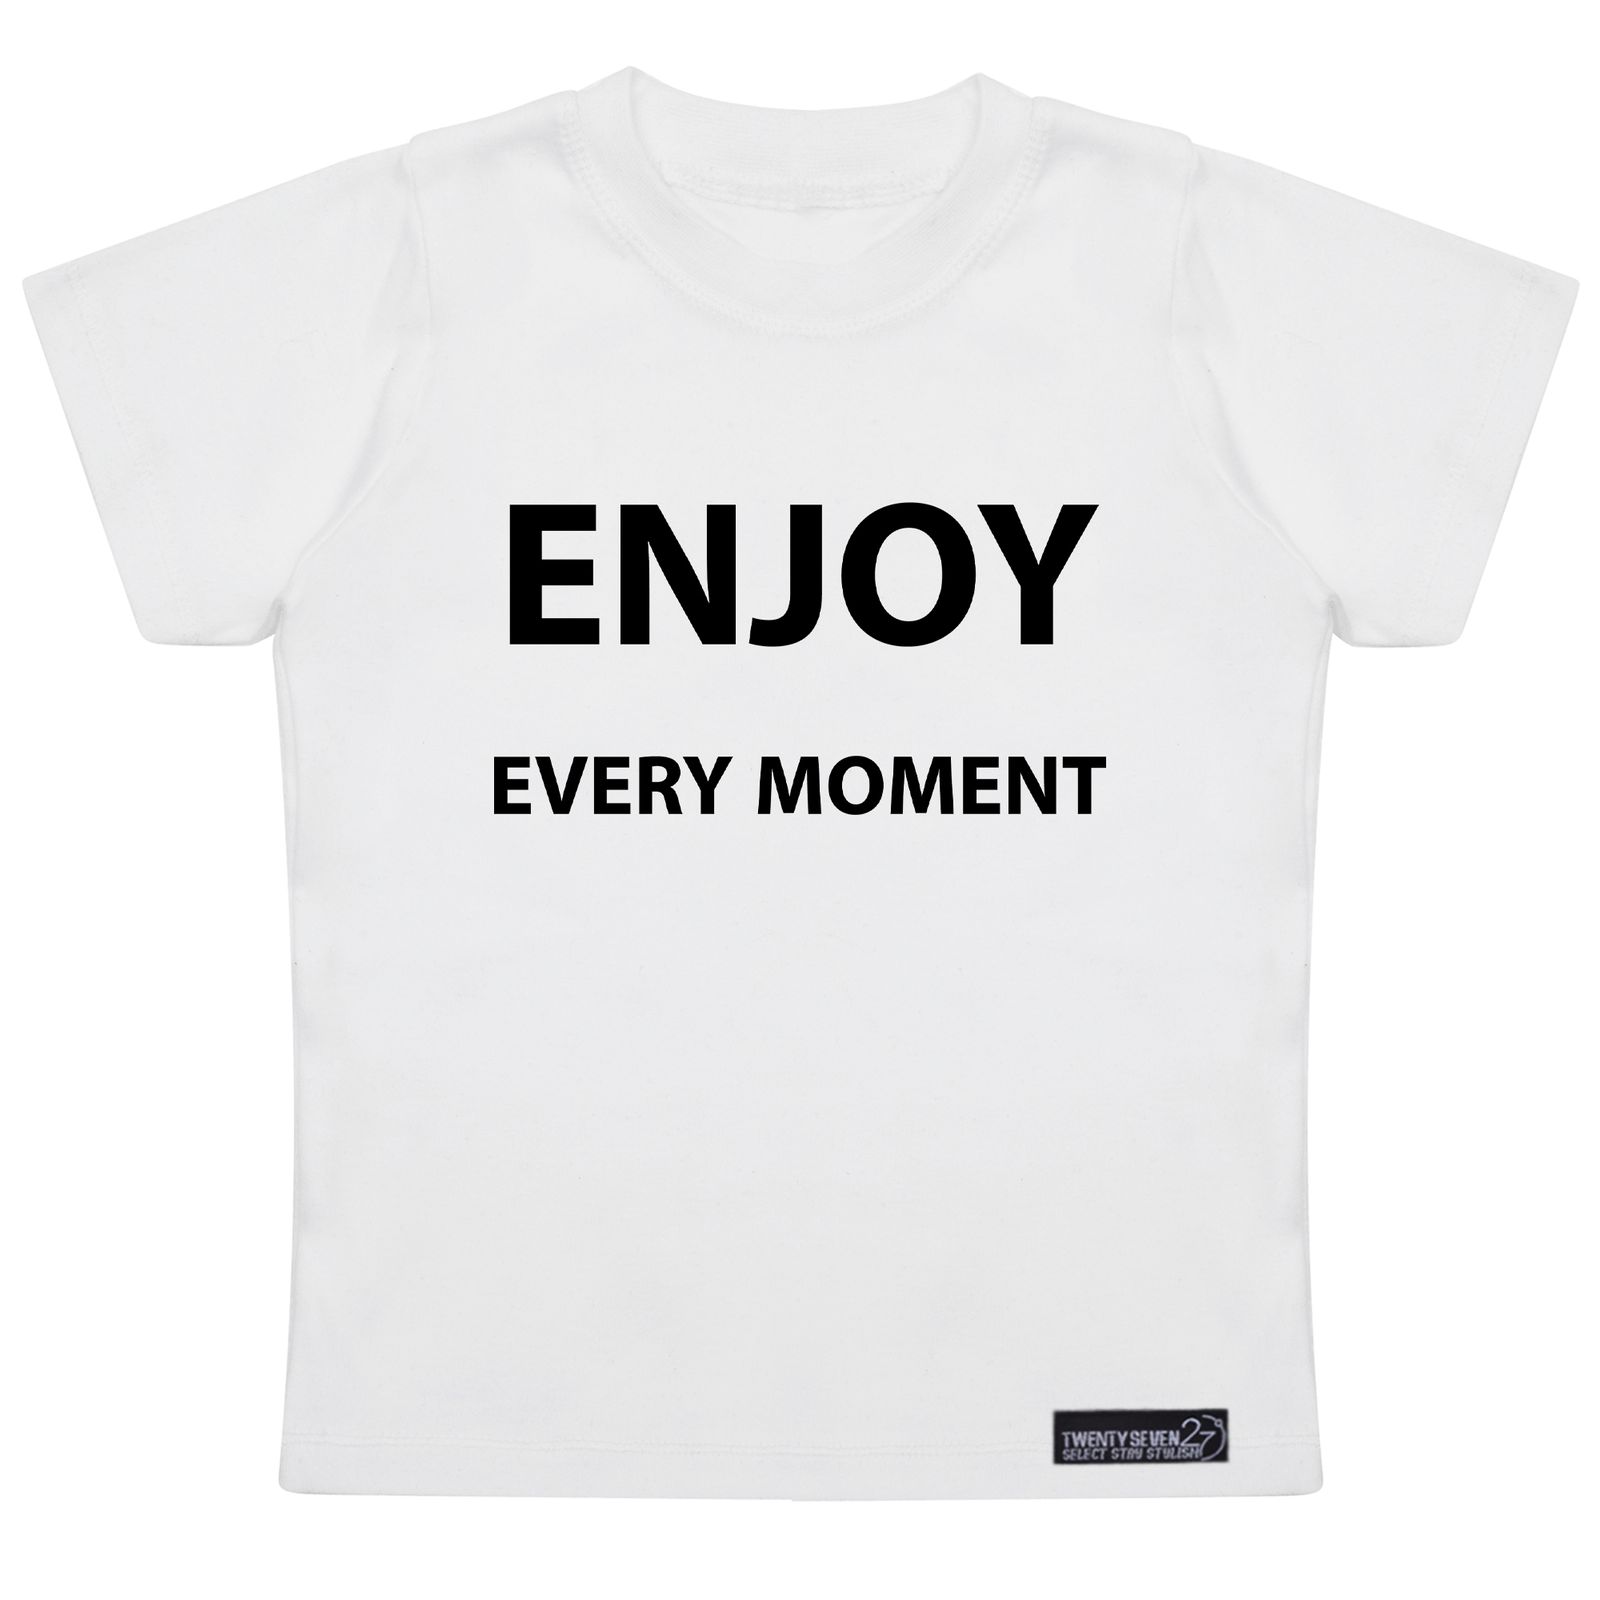 تی شرت آستین کوتاه پسرانه 27 مدل Enjoy Every Moment کد MH974 -  - 3